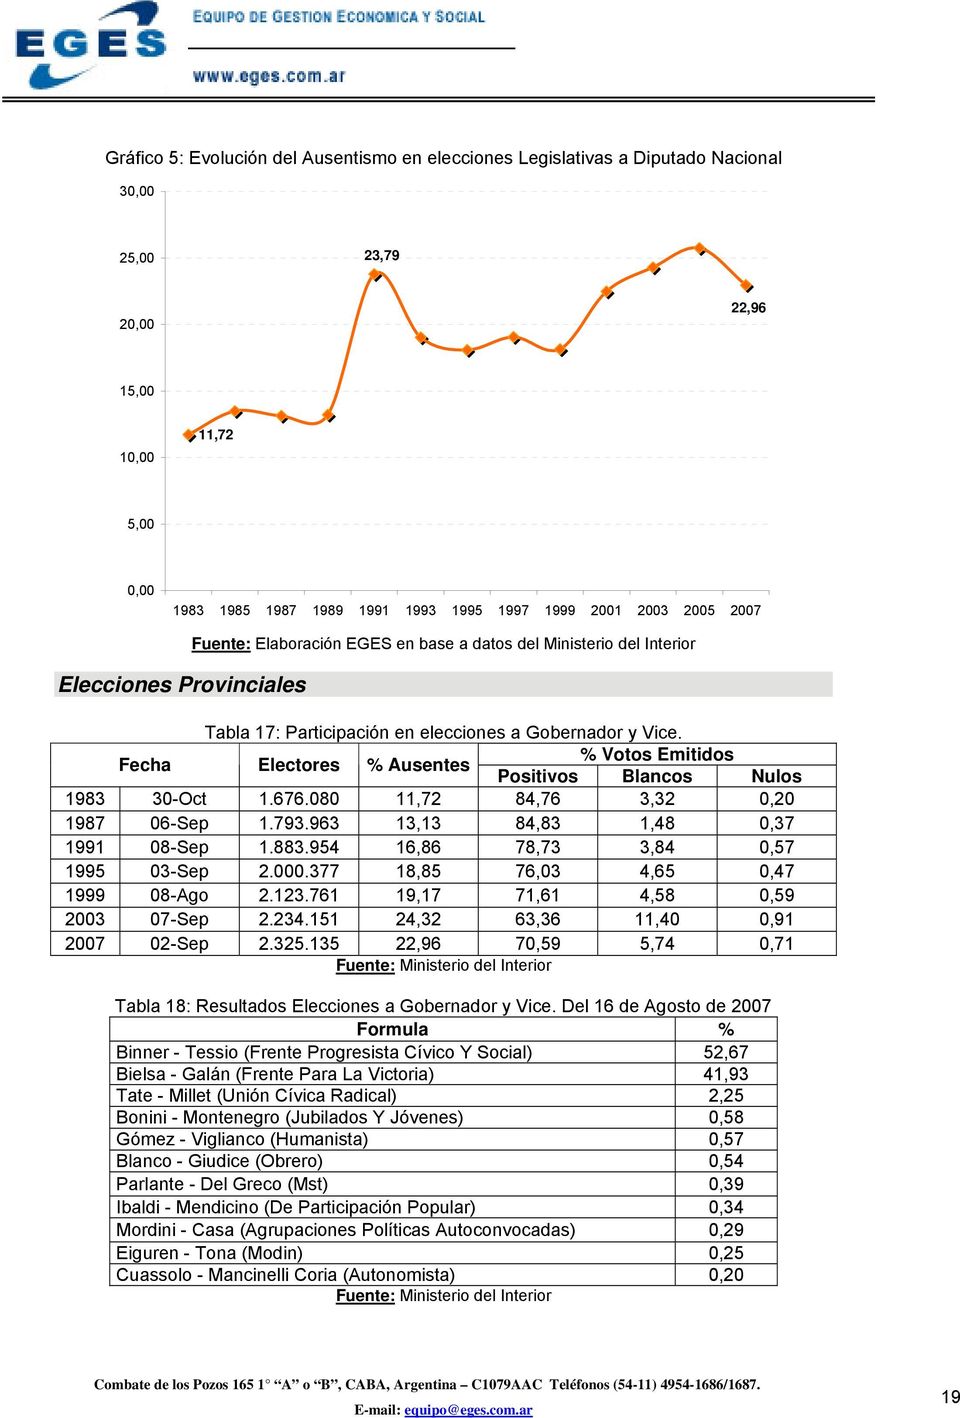 Fecha Electores % Ausentes % Votos Emitidos Positivos Blancos Nulos 1983 30-Oct 1.676.080 11,72 84,76 3,32 0,20 1987 06-Sep 1.793.963 13,13 84,83 1,48 0,37 1991 08-Sep 1.883.